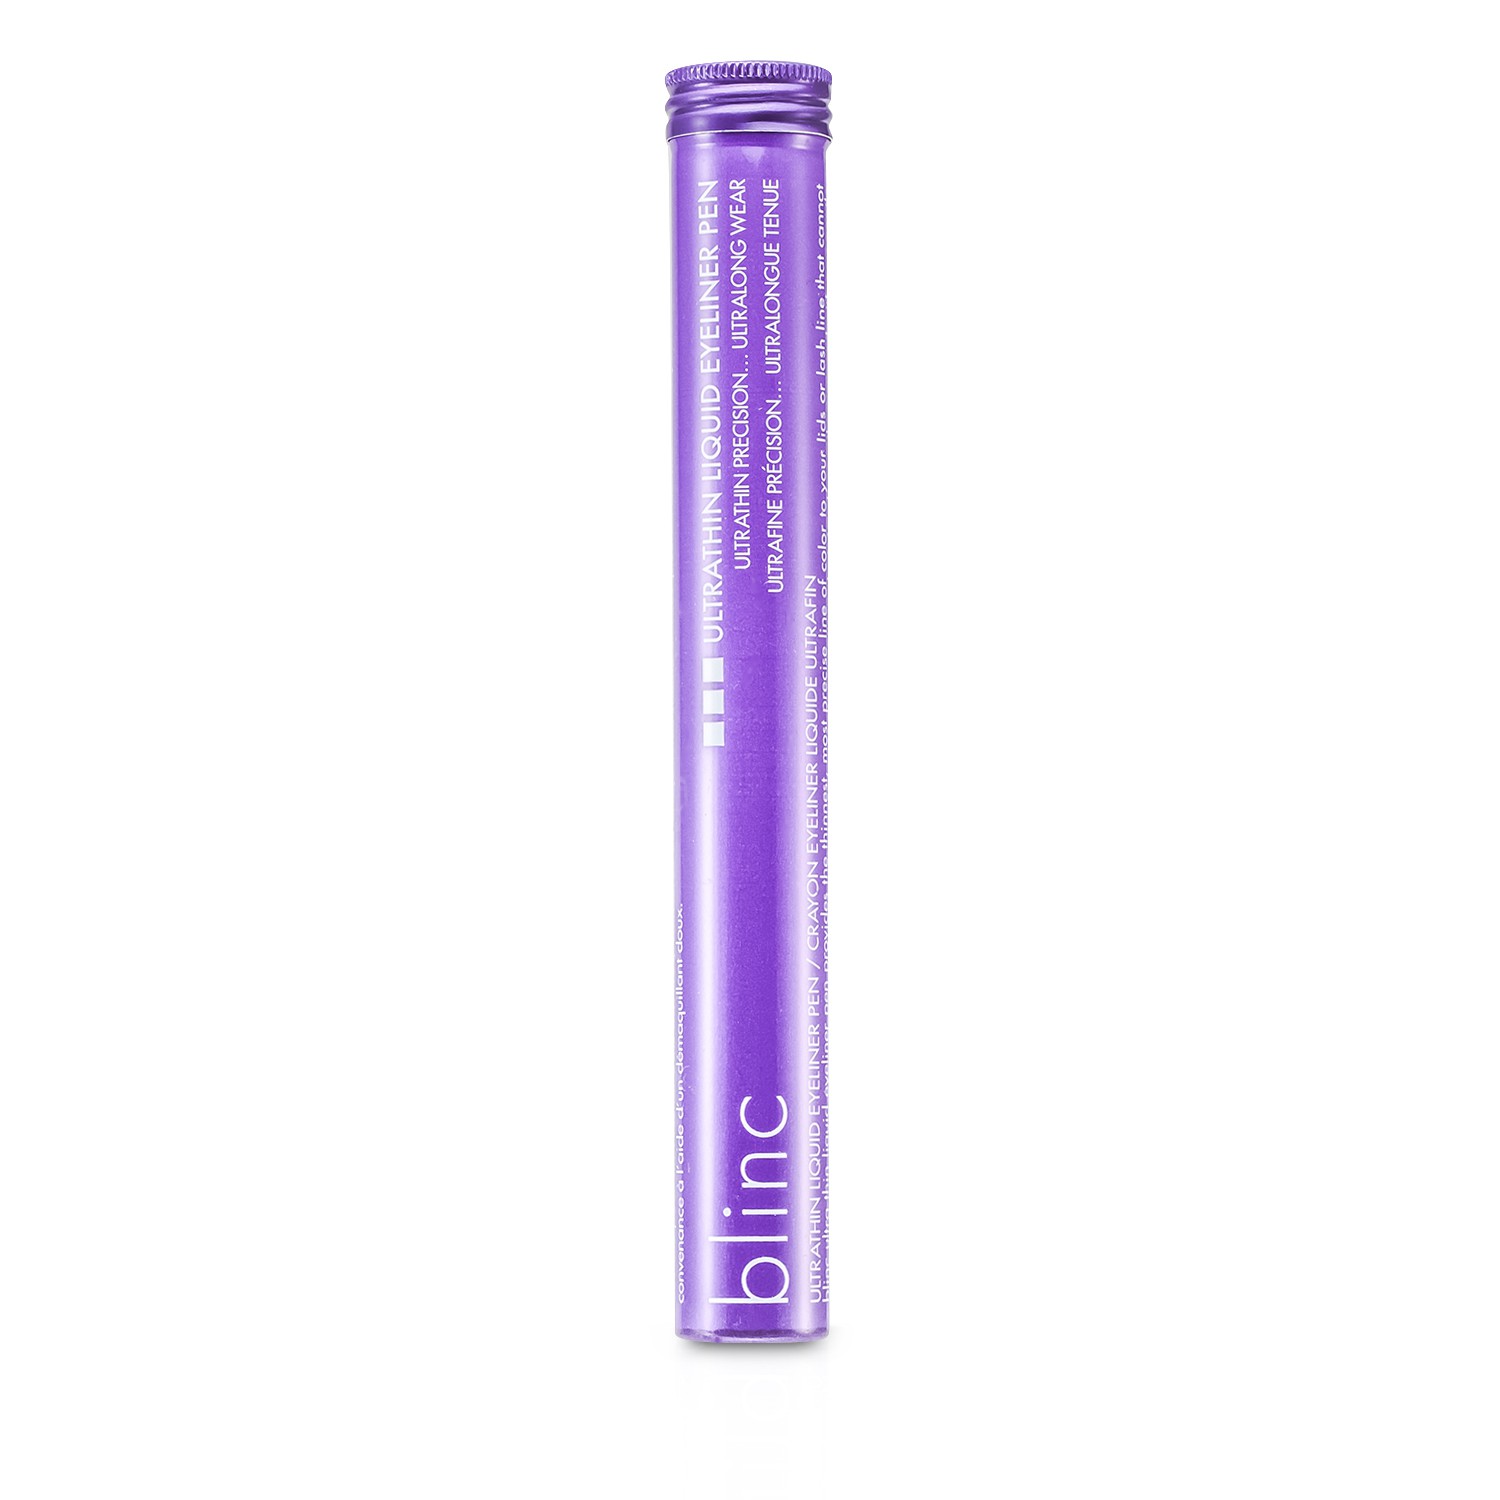 Blinc Ultrathin Liquid Eyeliner Pen 0.7ml/0.025oz